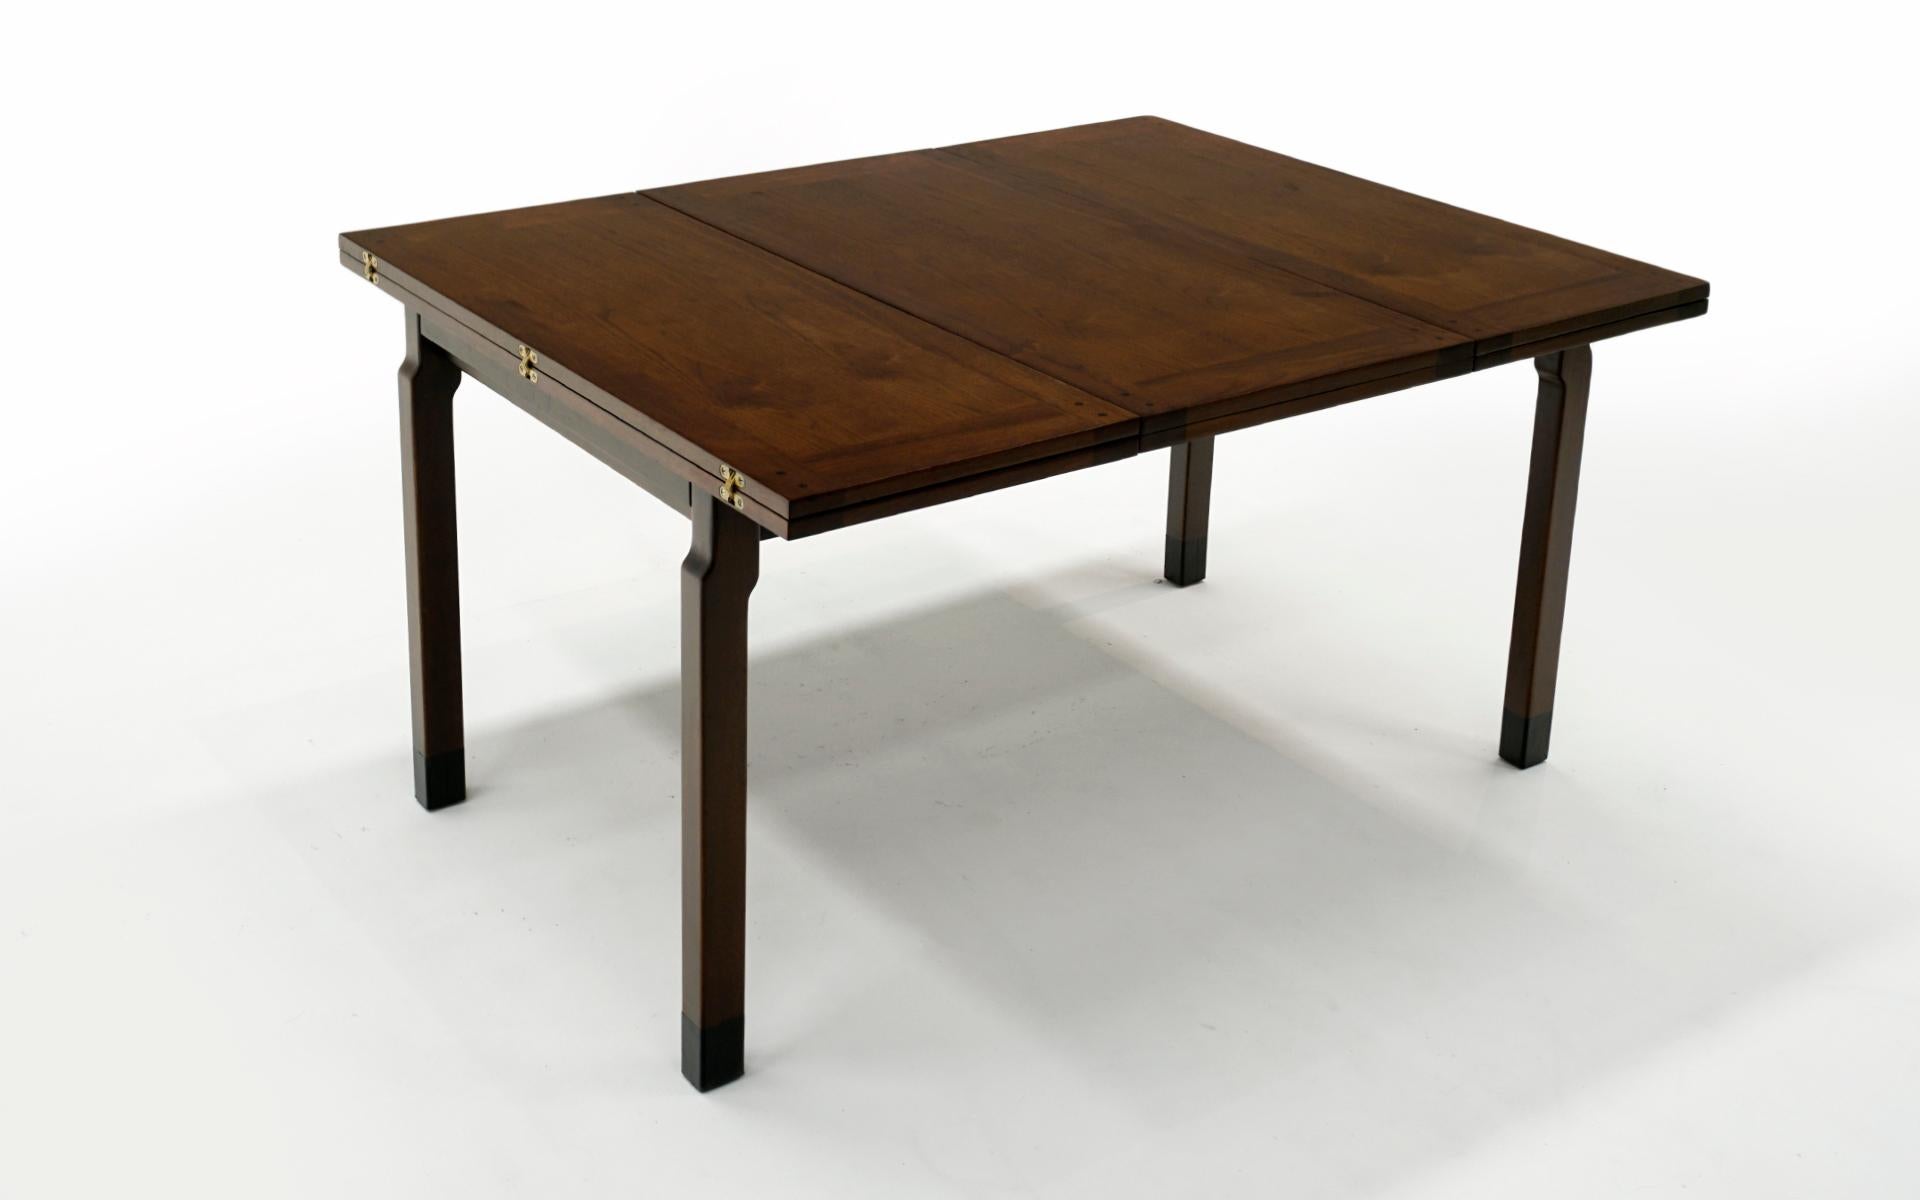 Sehr seltener, erweiterbarer Esstisch, entworfen von Edward Wormley für Dunbar, 1950er Jahre.  Nussbaumholz mit schwarzen Lederknöcheln und Messingbeschlägen.  Die Tabelle beginnt bei 54 Zoll breit und erstreckt sich auf 84 Zoll breit, wenn die